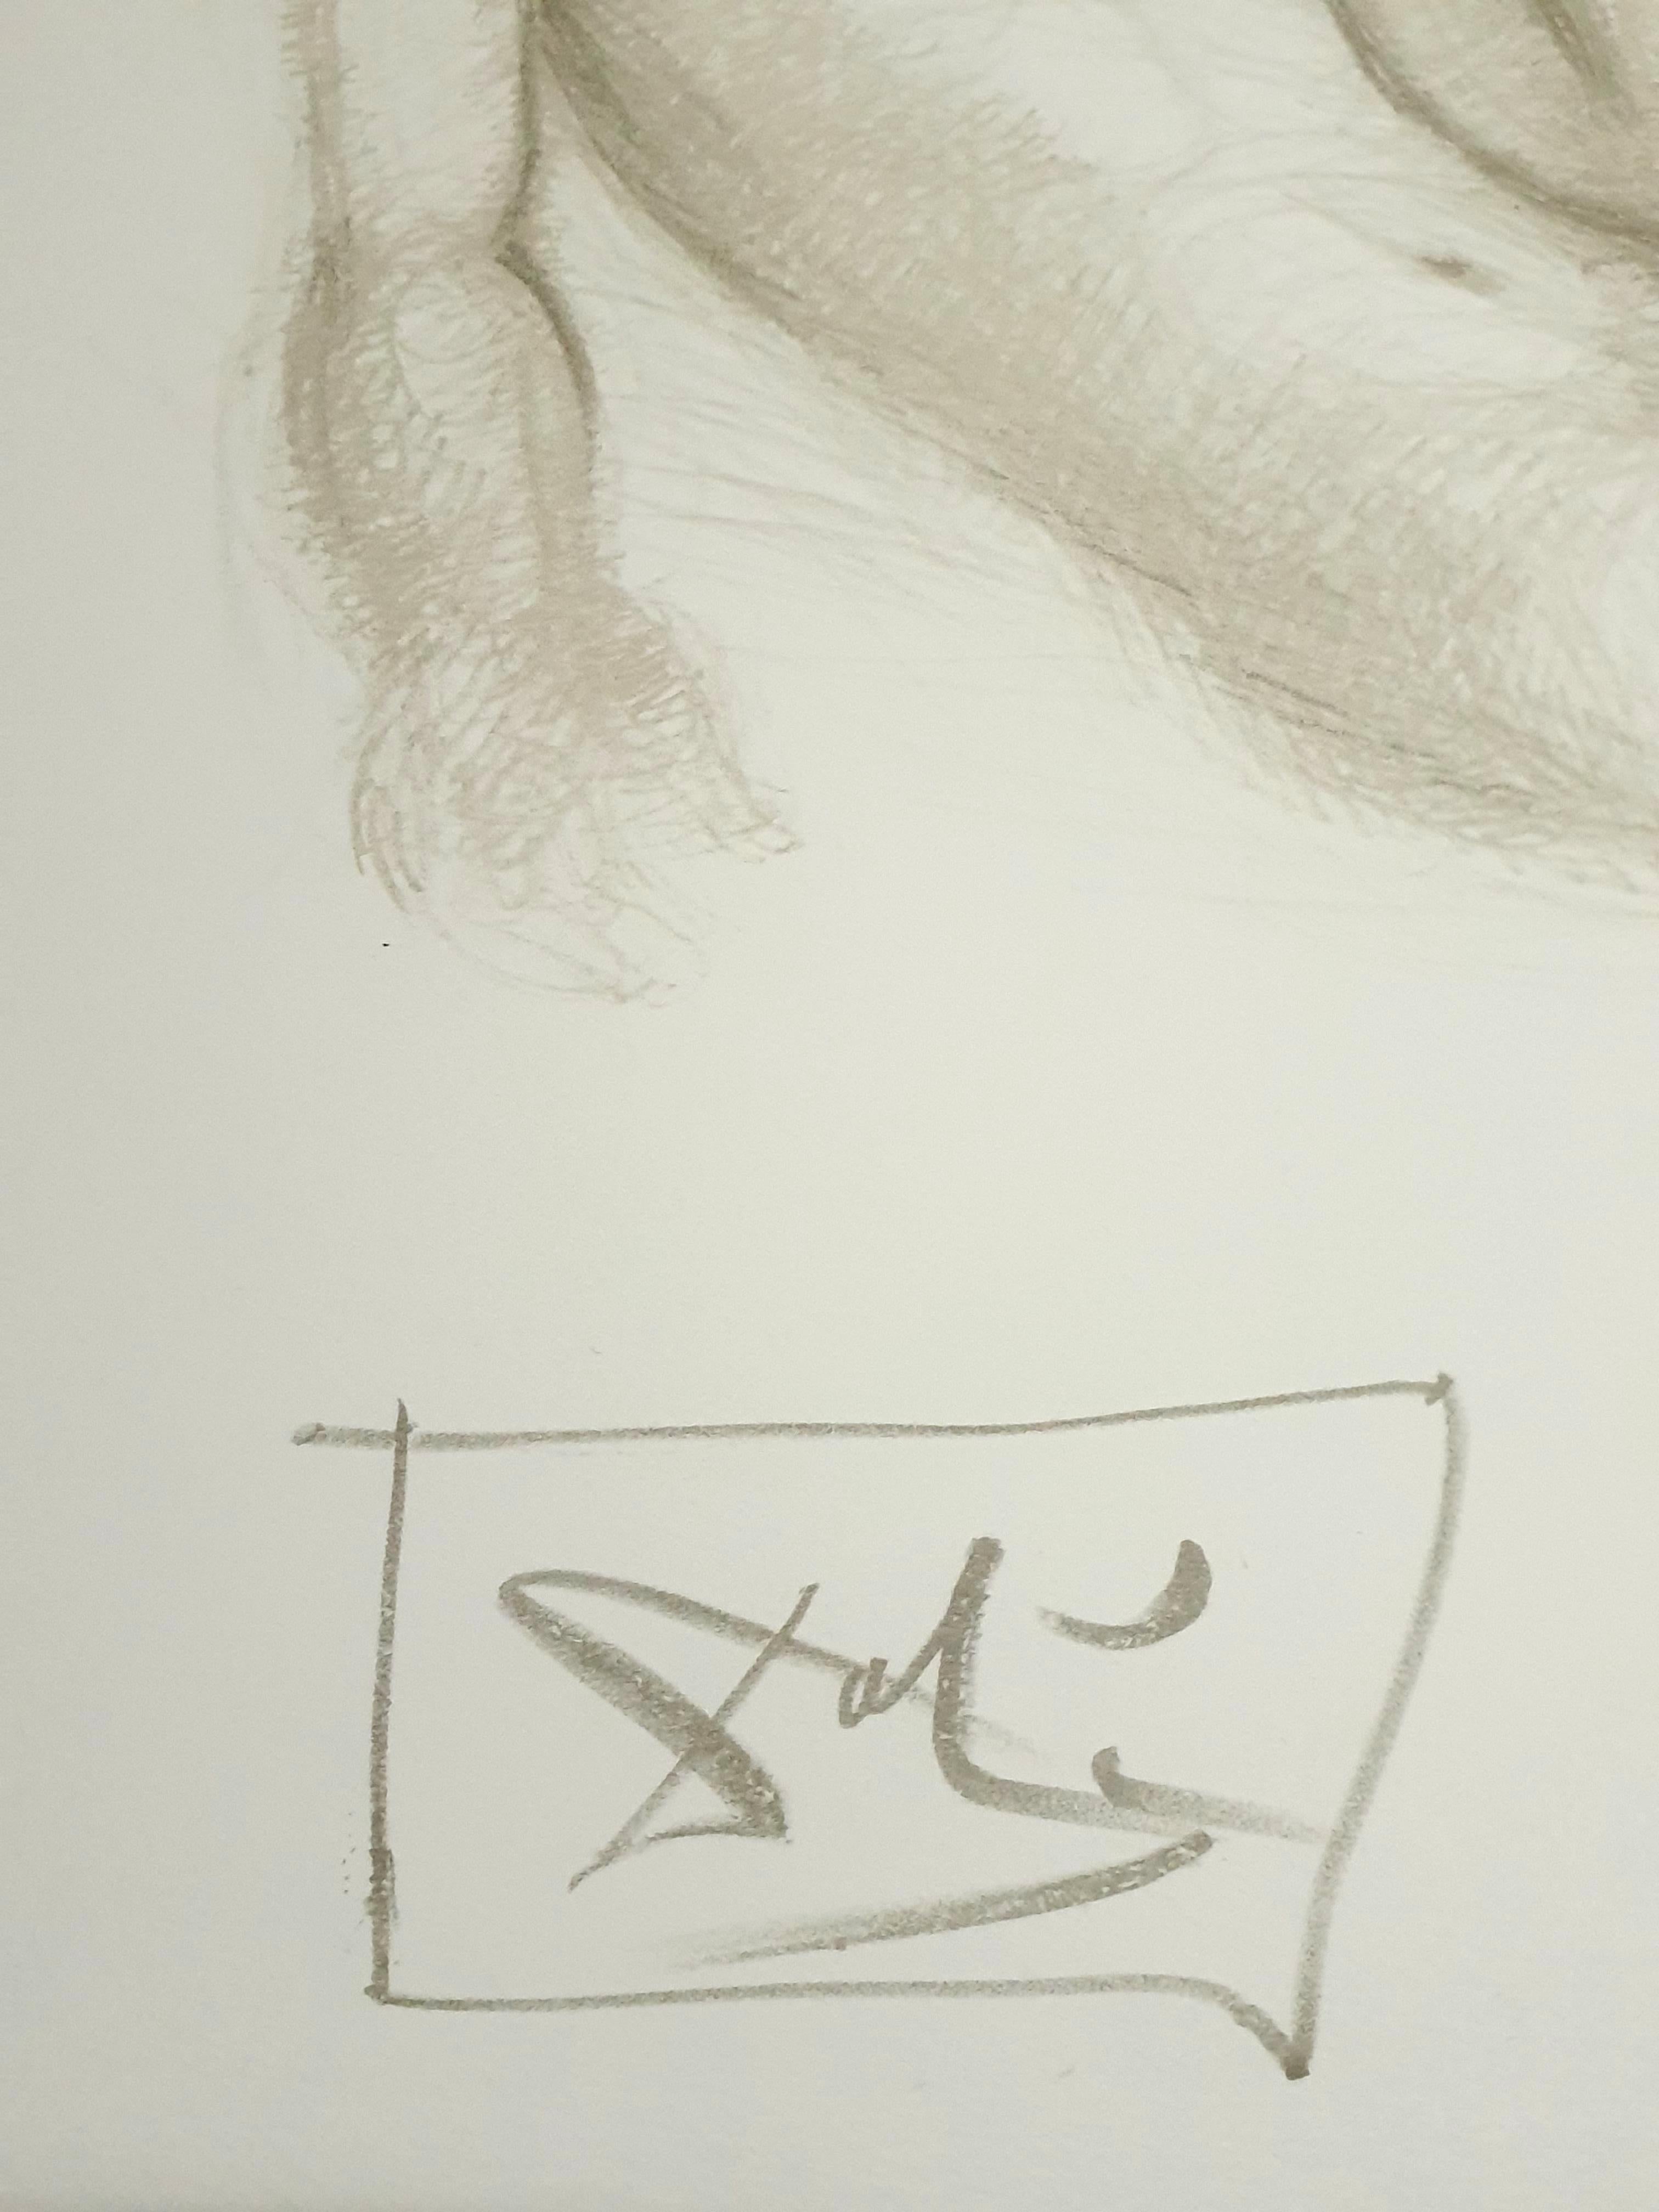 Salvador Dali - Nackte Paare - Original Handsigned Lithographie
Abmessungen: 52 x 65 cm
1970
Mit Bleistift signiert und nummeriert
Ausgabe : /CXX
Referenzen : Feld 70-8